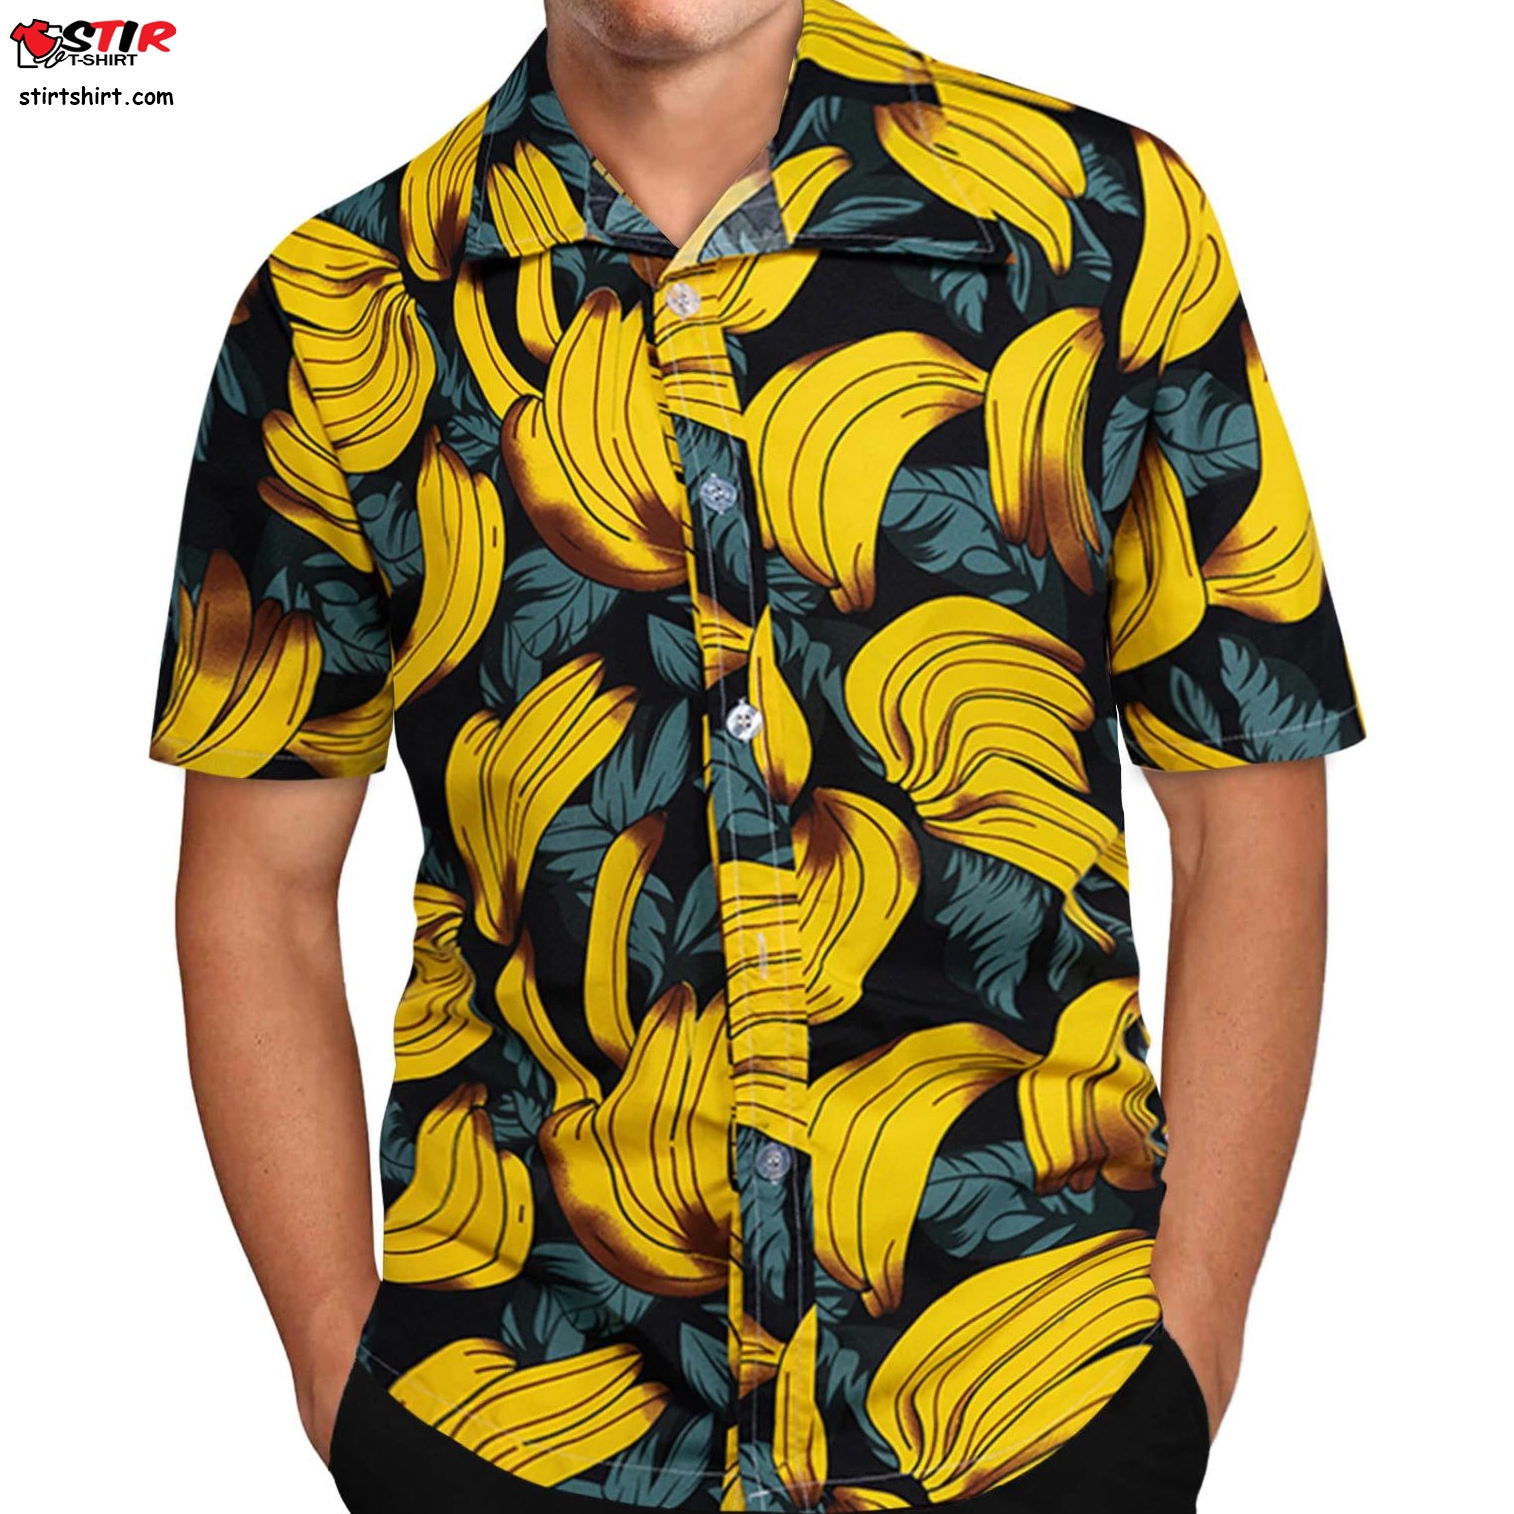 Mens Hawaiian Shirt Male Casual Camisa Masculina Banana Funny Printed Funny Beach Shirts Short Sleeve Brand Clothing Asian Size